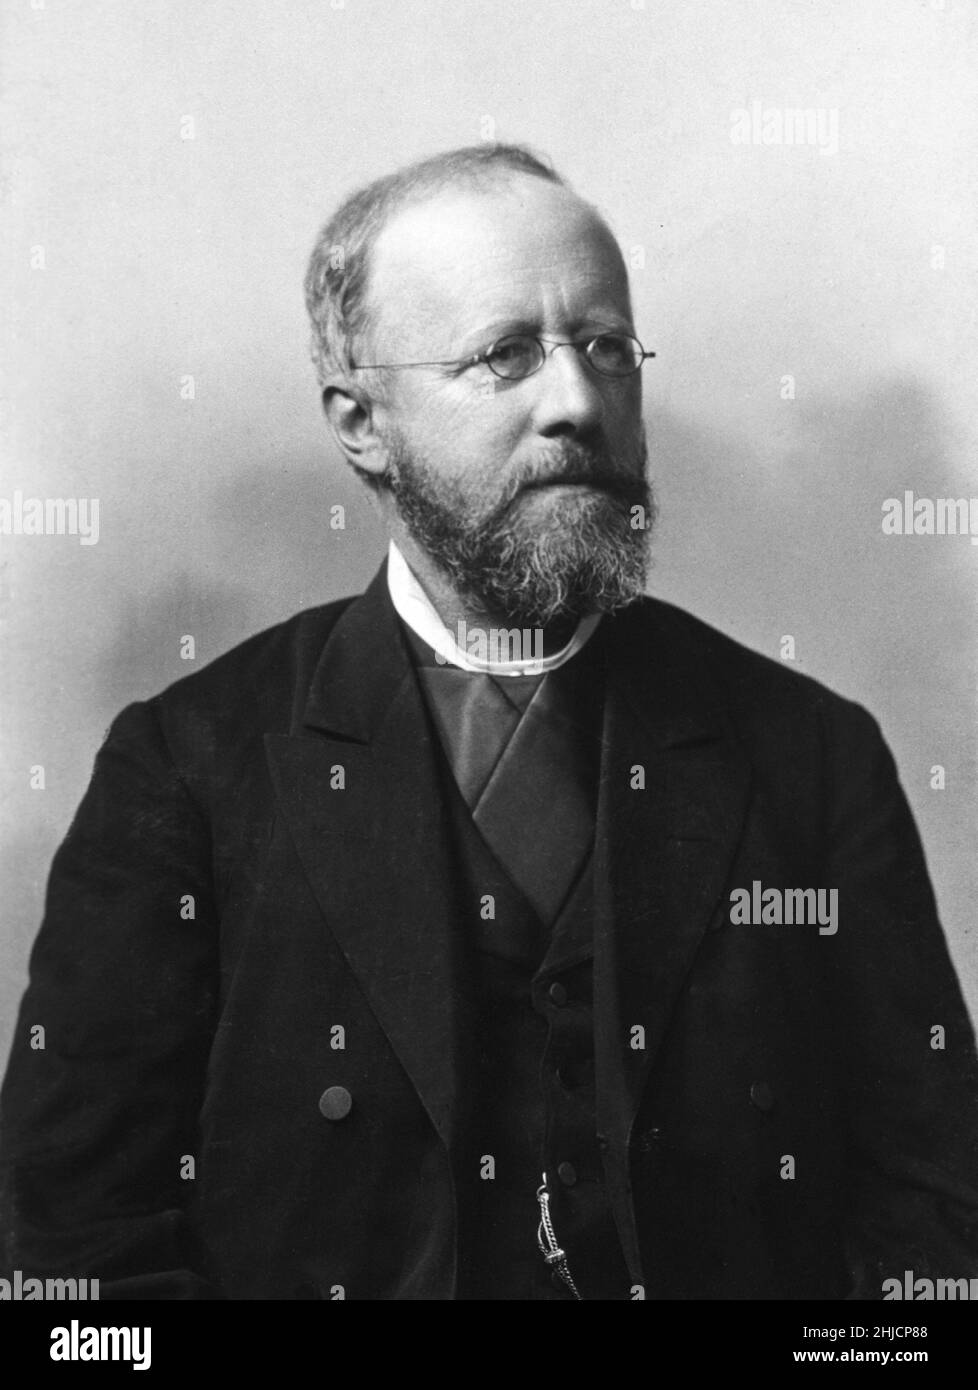 Edwin Klebs (1834-1913) war ein schweizerisch-deutscher Mikrobiologe, der für seine Arbeiten zu Infektionskrankheiten bekannt war. 1884 identifizierte er als erster (mit Friedrich L√∂ffler) ein Bakterium, das Diphtherie verursacht, das damals als Klebs-L√∂ffler Bacillus und heute als Corynebacterium diphtheriae bekannt war. Foto ca. 1884. Stockfoto